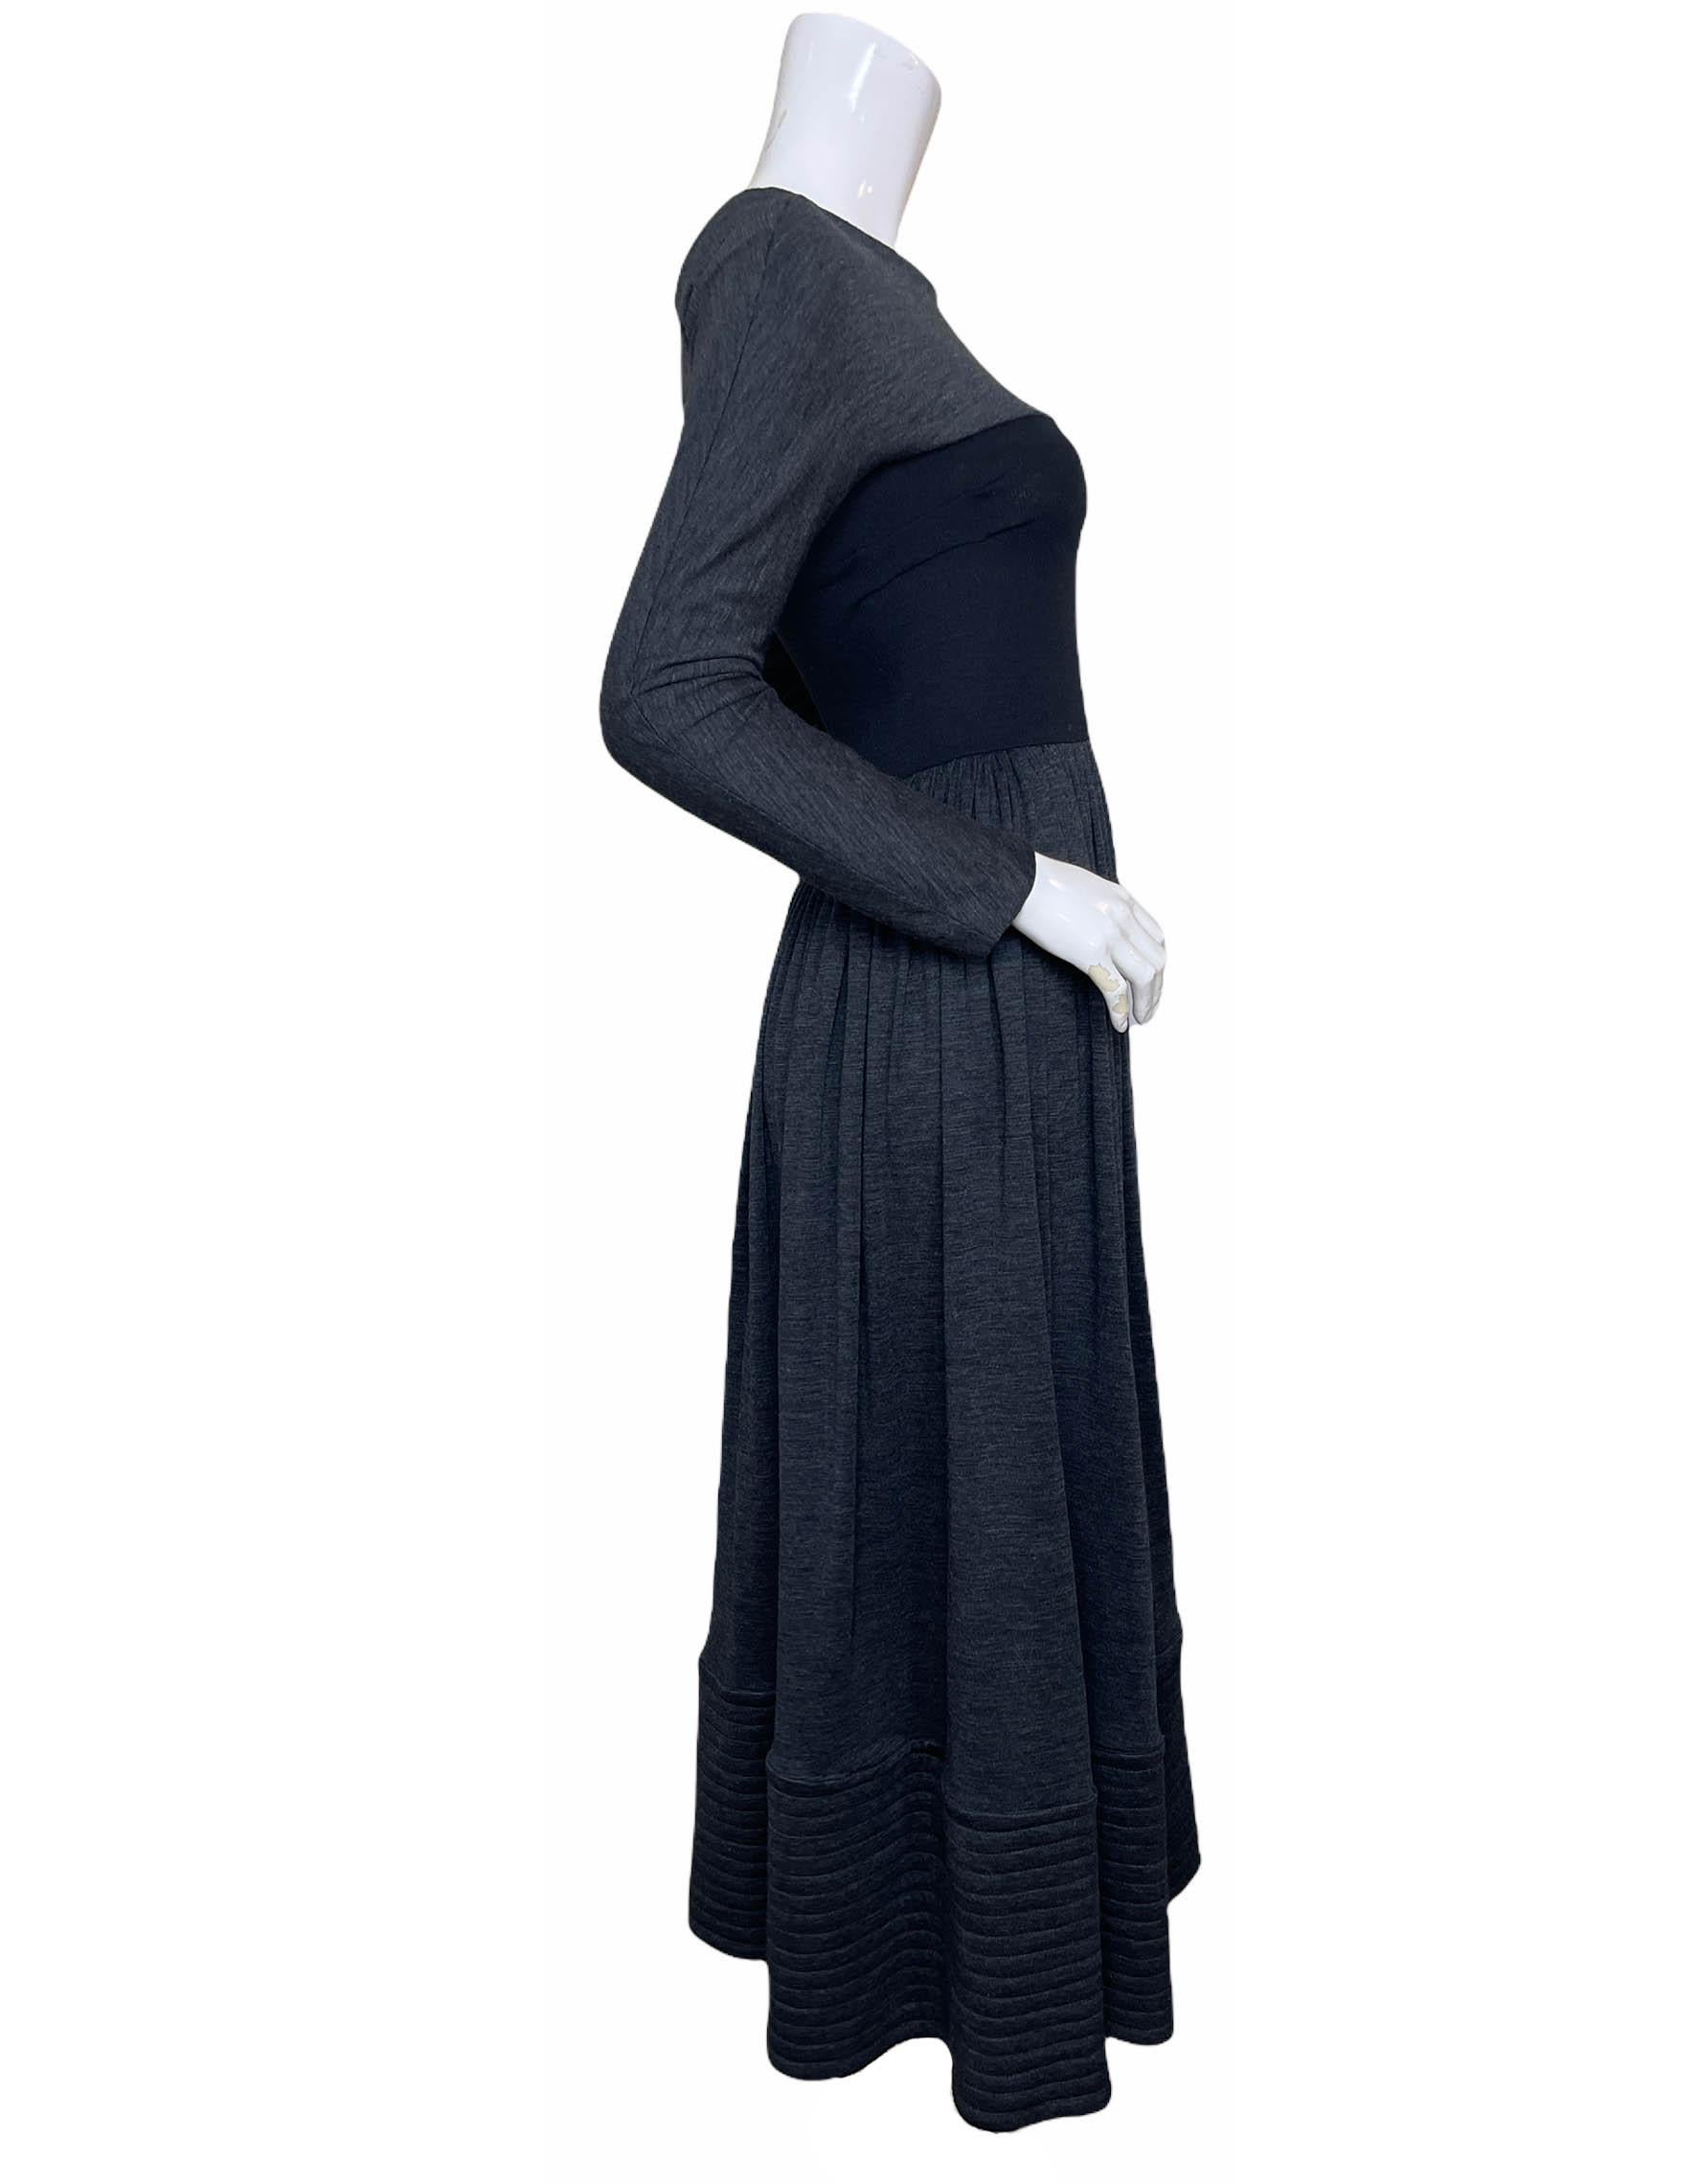 Geoffrey Beene Grey Longsleeve Jersey Dress w/ Black Bodice sz S For Sale 4